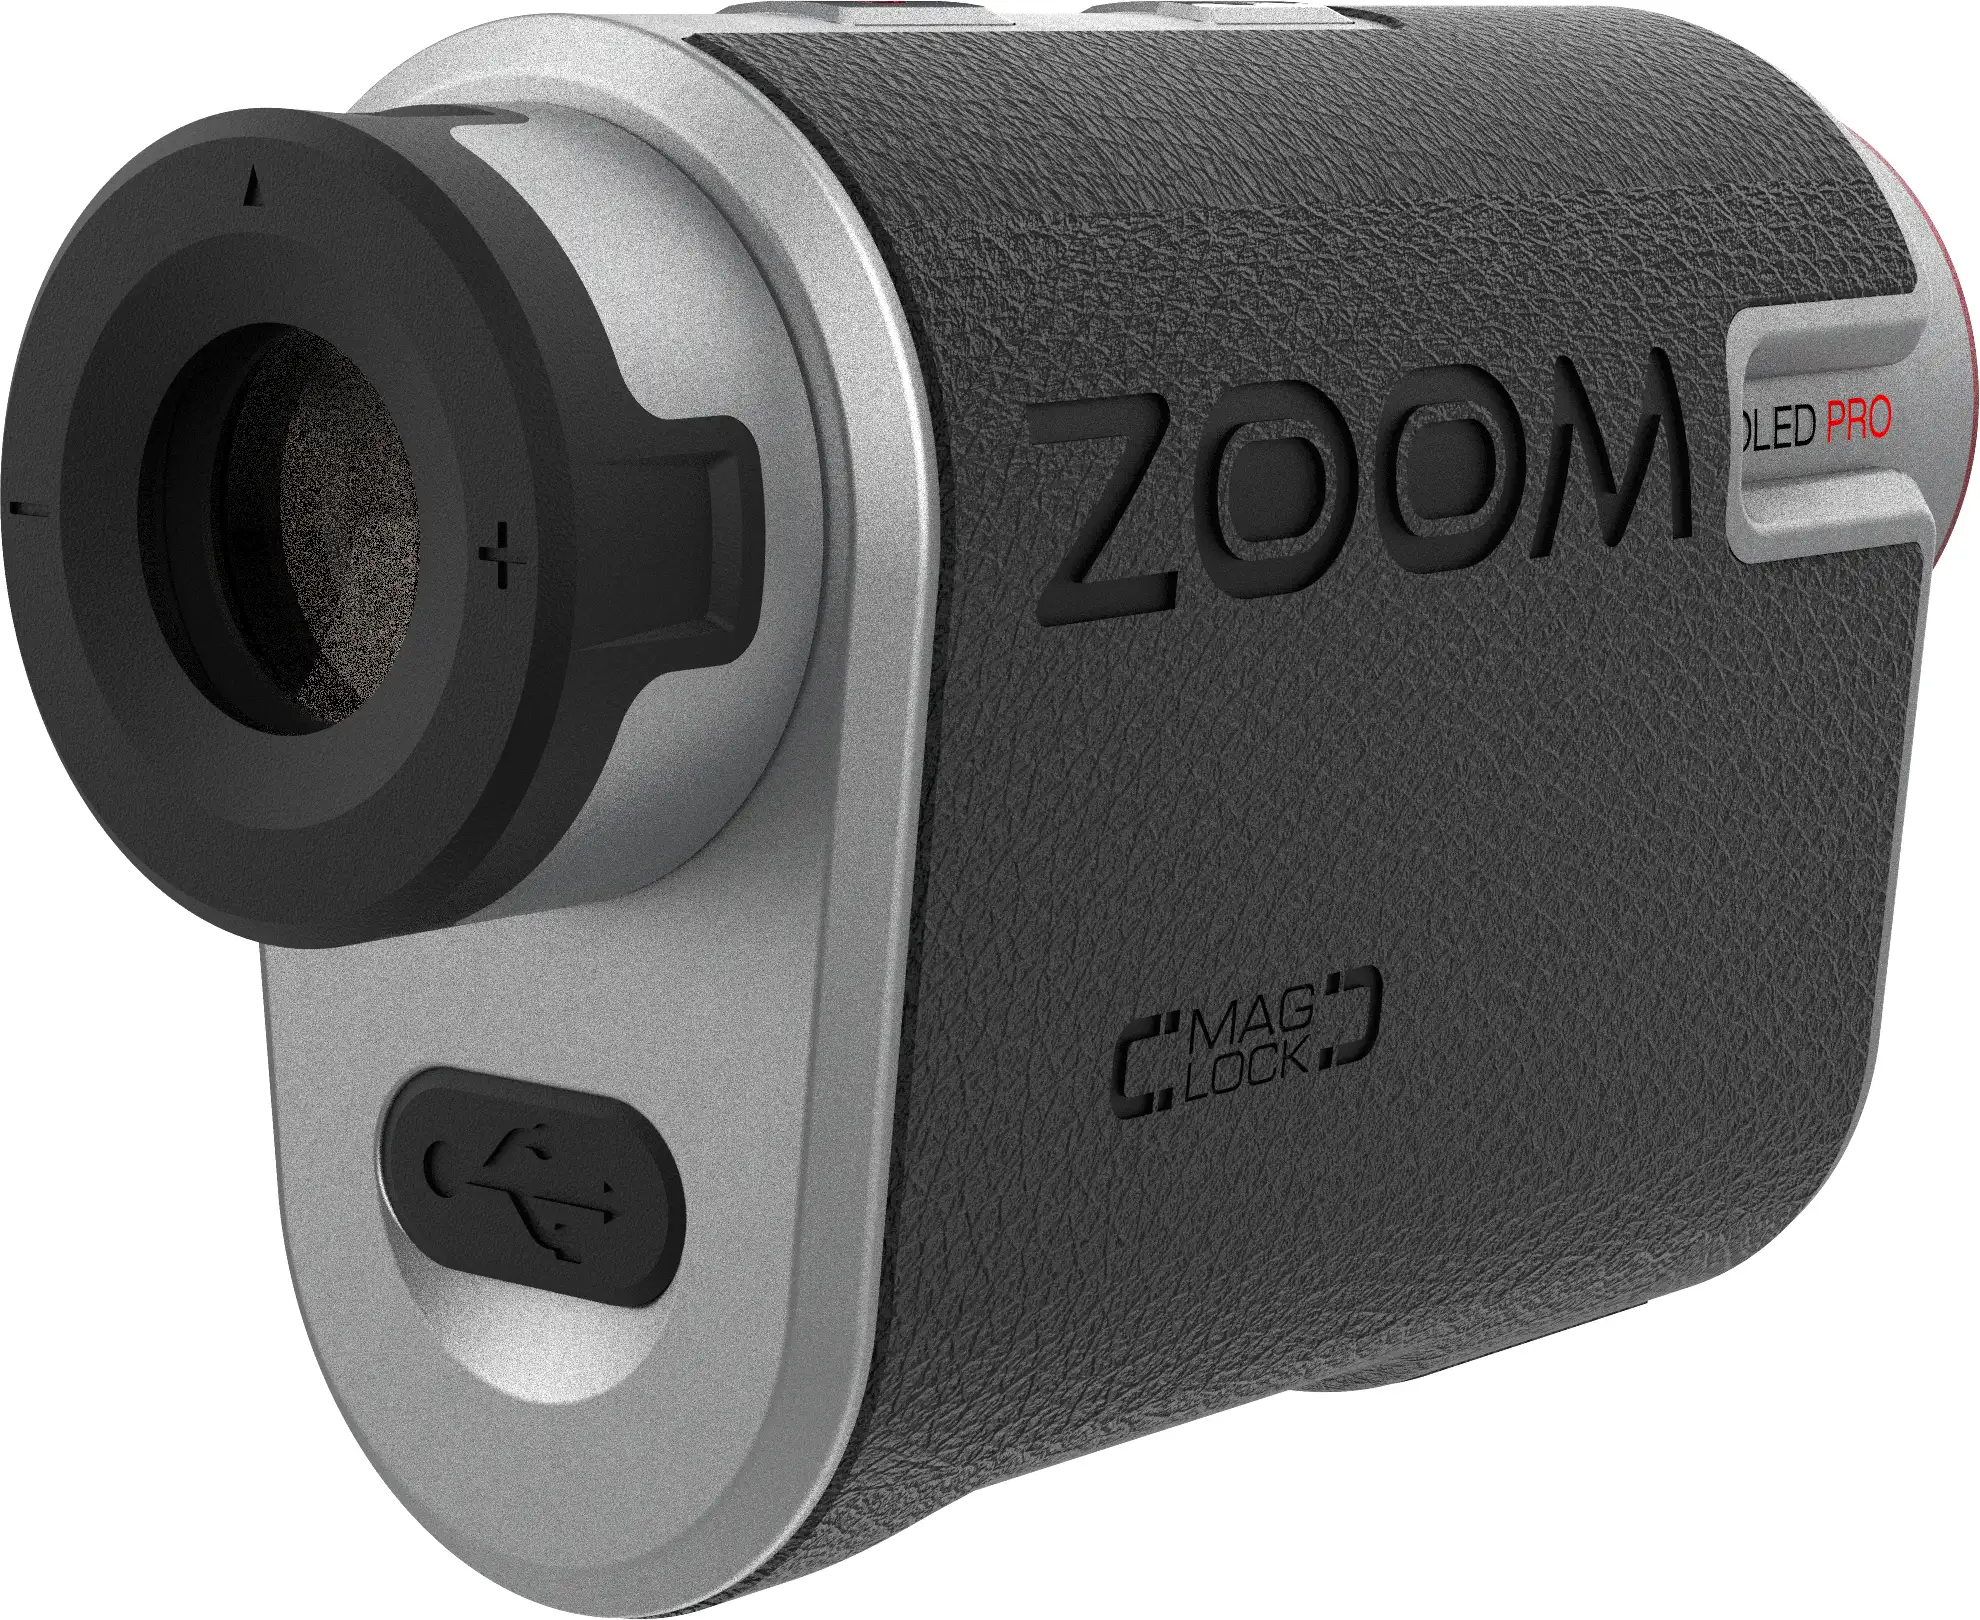 Zoom OLED Pro Laser Entfernungsmesser